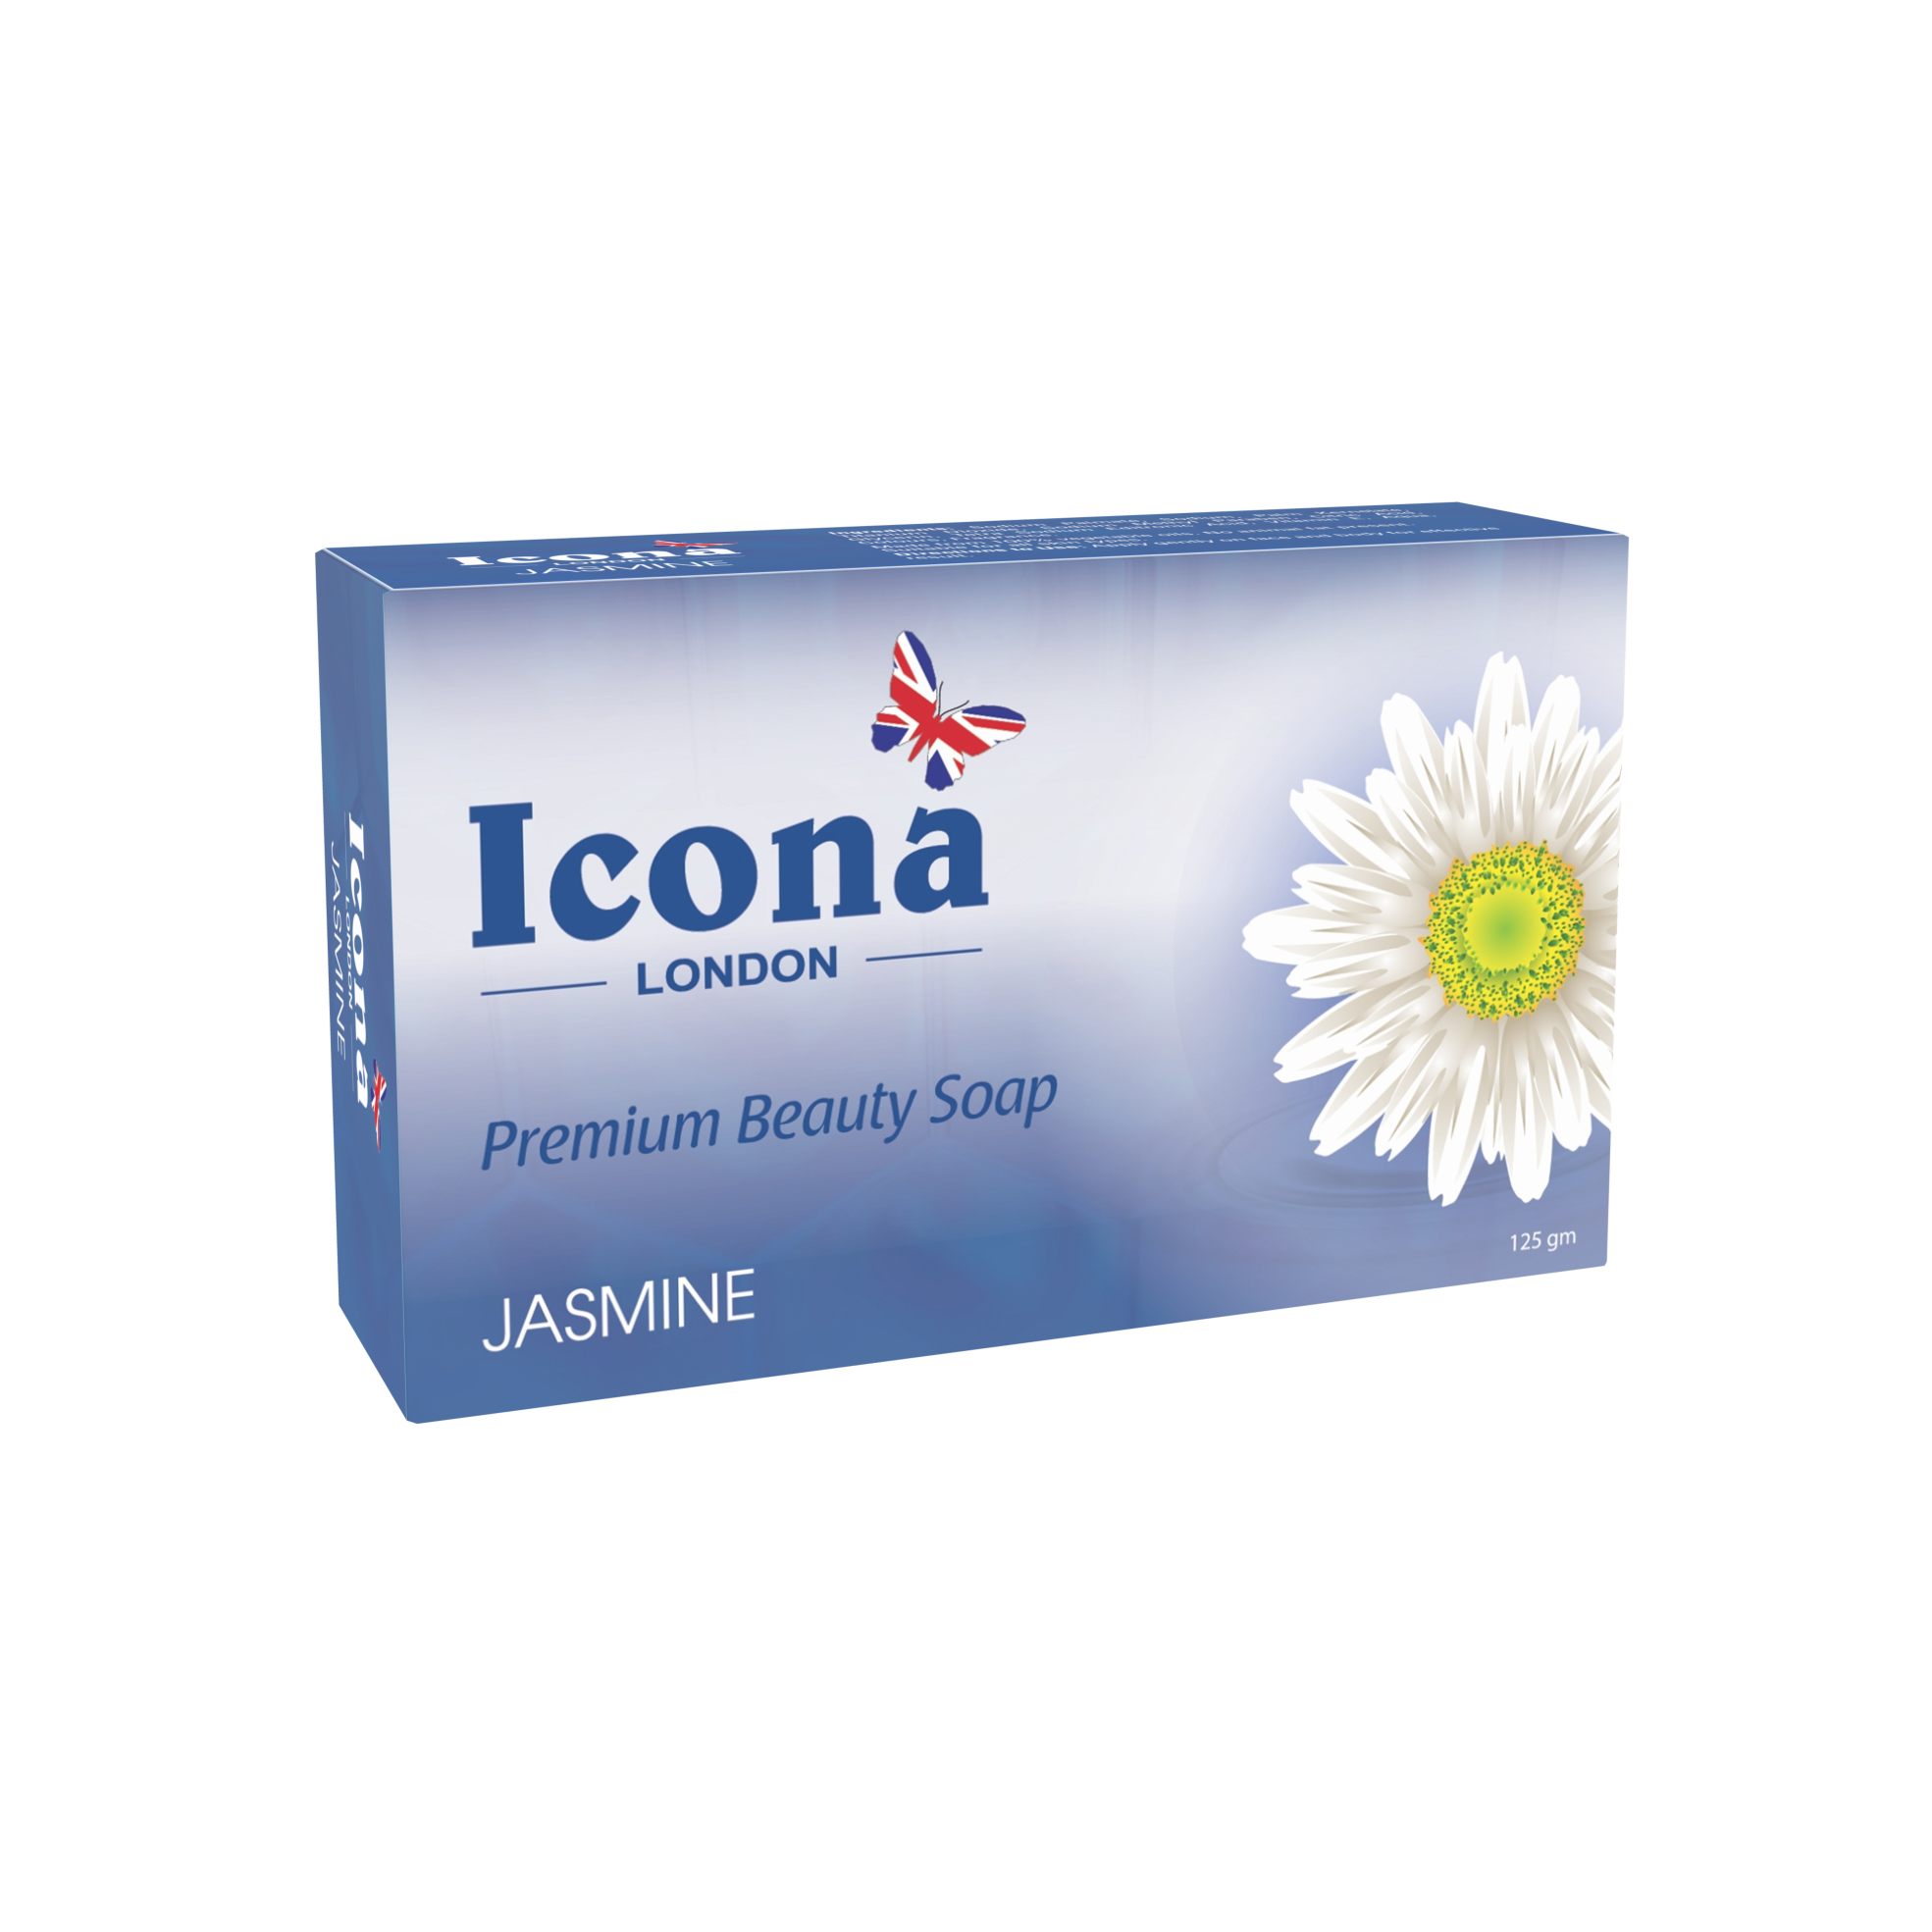 Icona London Beauty Soap (Jasmine)